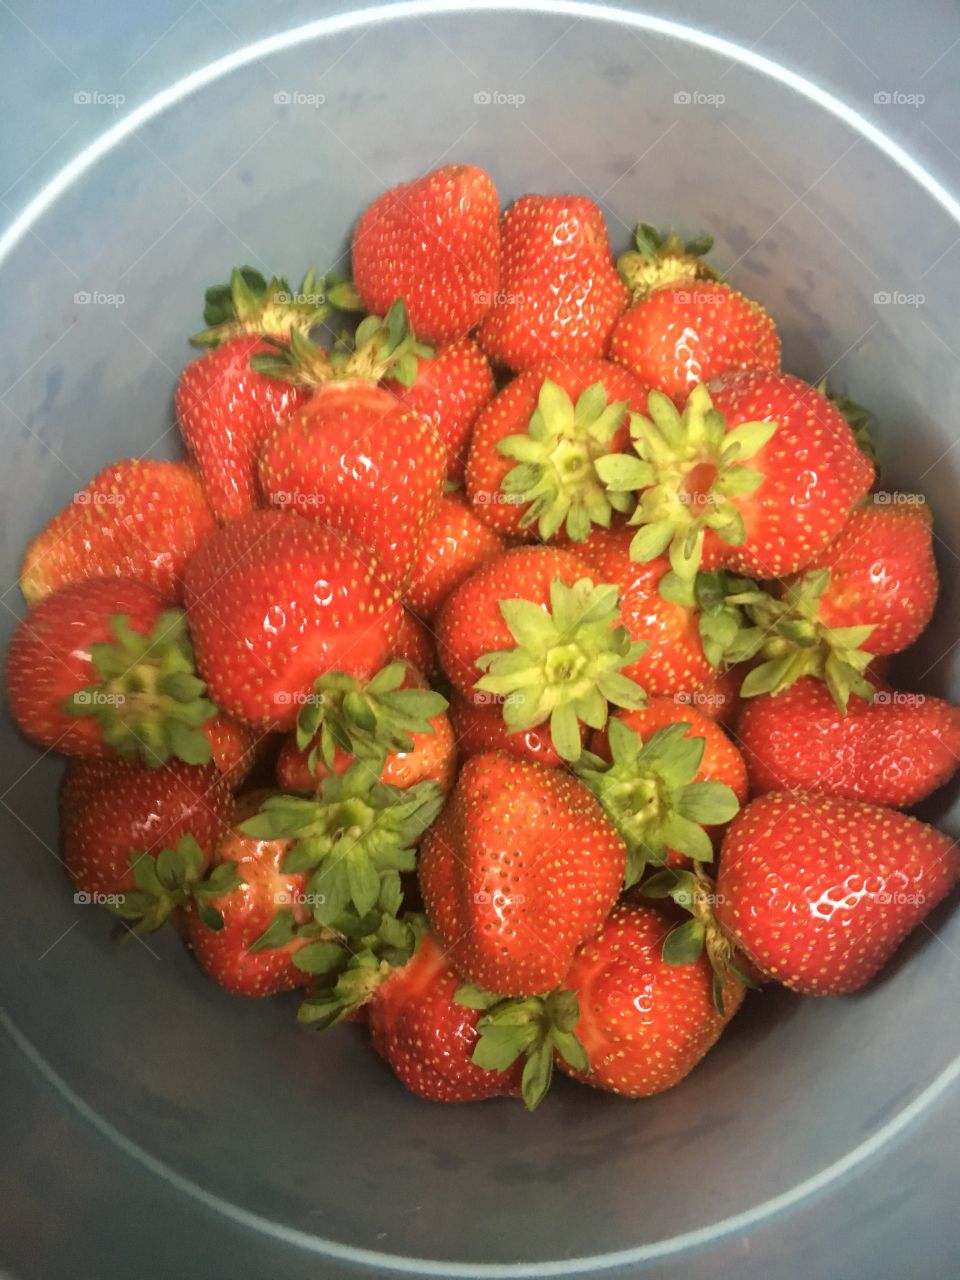 Fresh strawberries from a u-pick